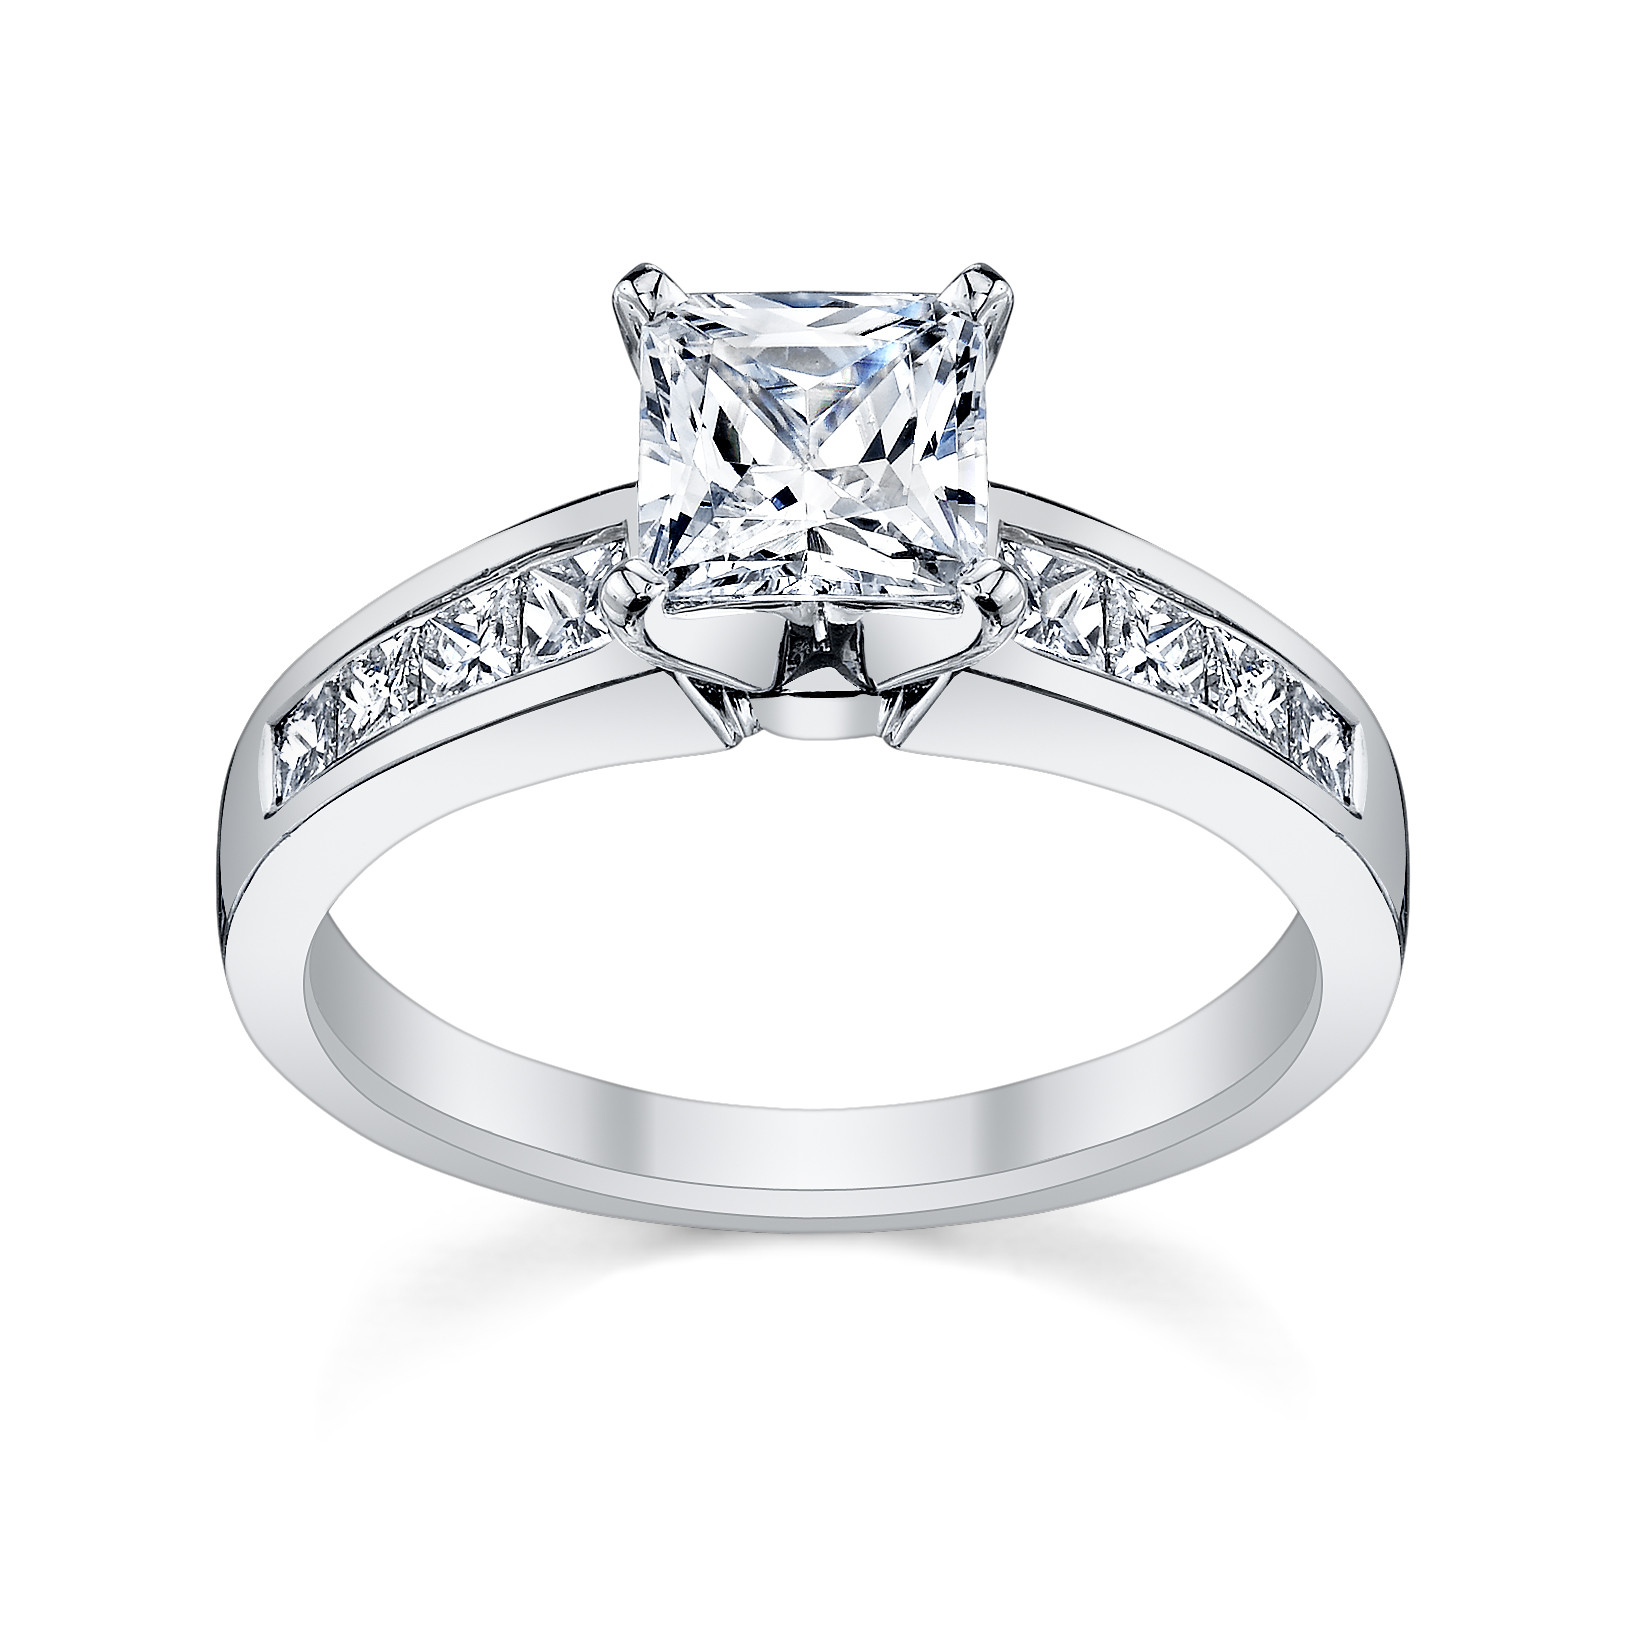 Engagement Ring Princess Cut
 6 Princess Cut Engagement Rings She ll Love Robbins